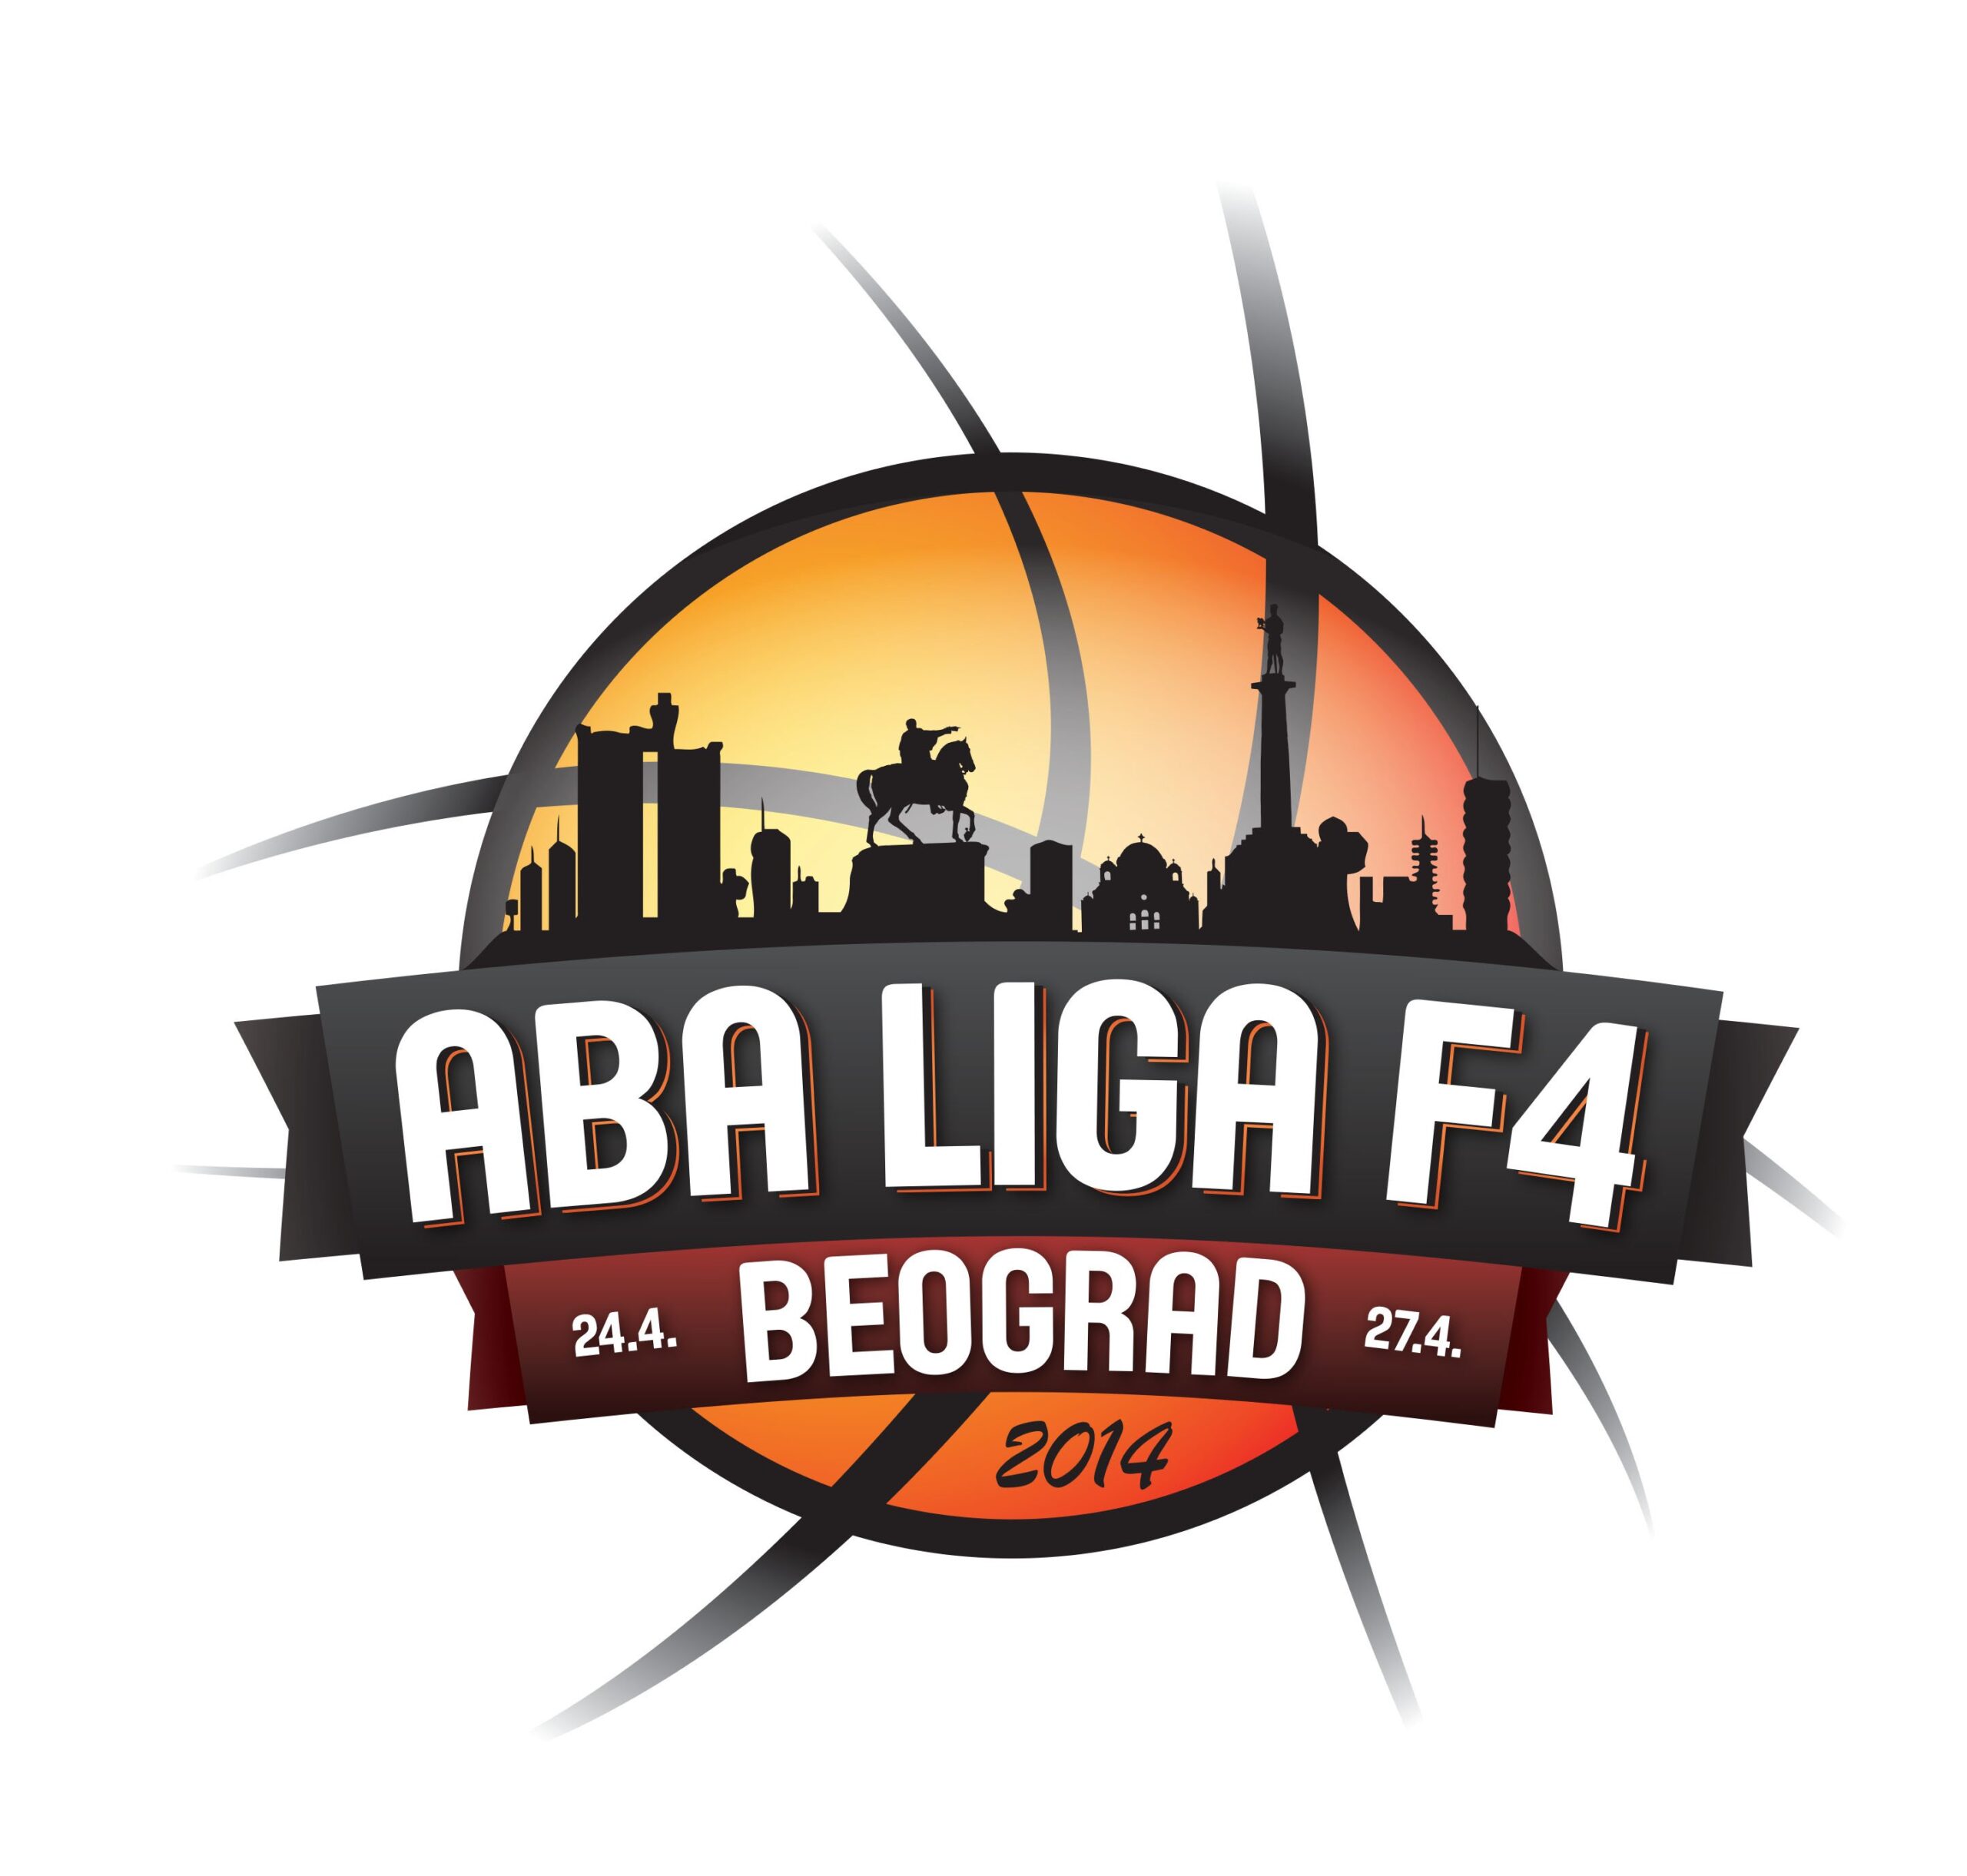 ABA liga F4 2014 Logo scaled